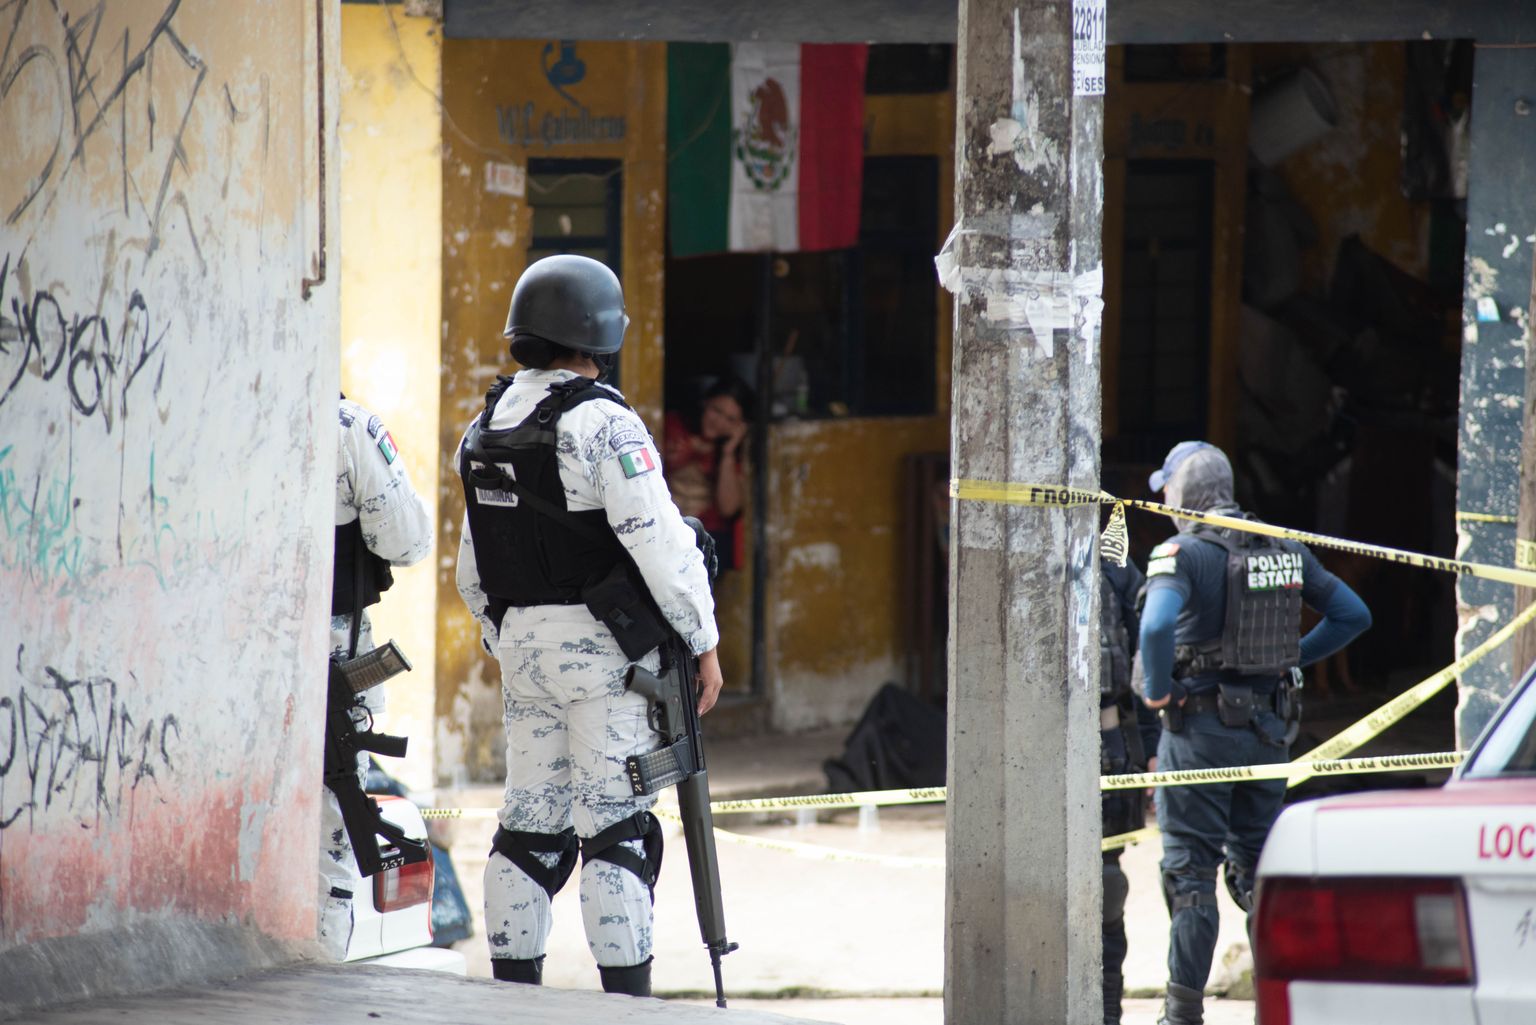 Mehhiko Veracruzi piirkond ägab pideva vägivalla all. Pilt pärineb 2020. 15. septembril aset leidnud tulevahetusest, kus hukkus üks mees.